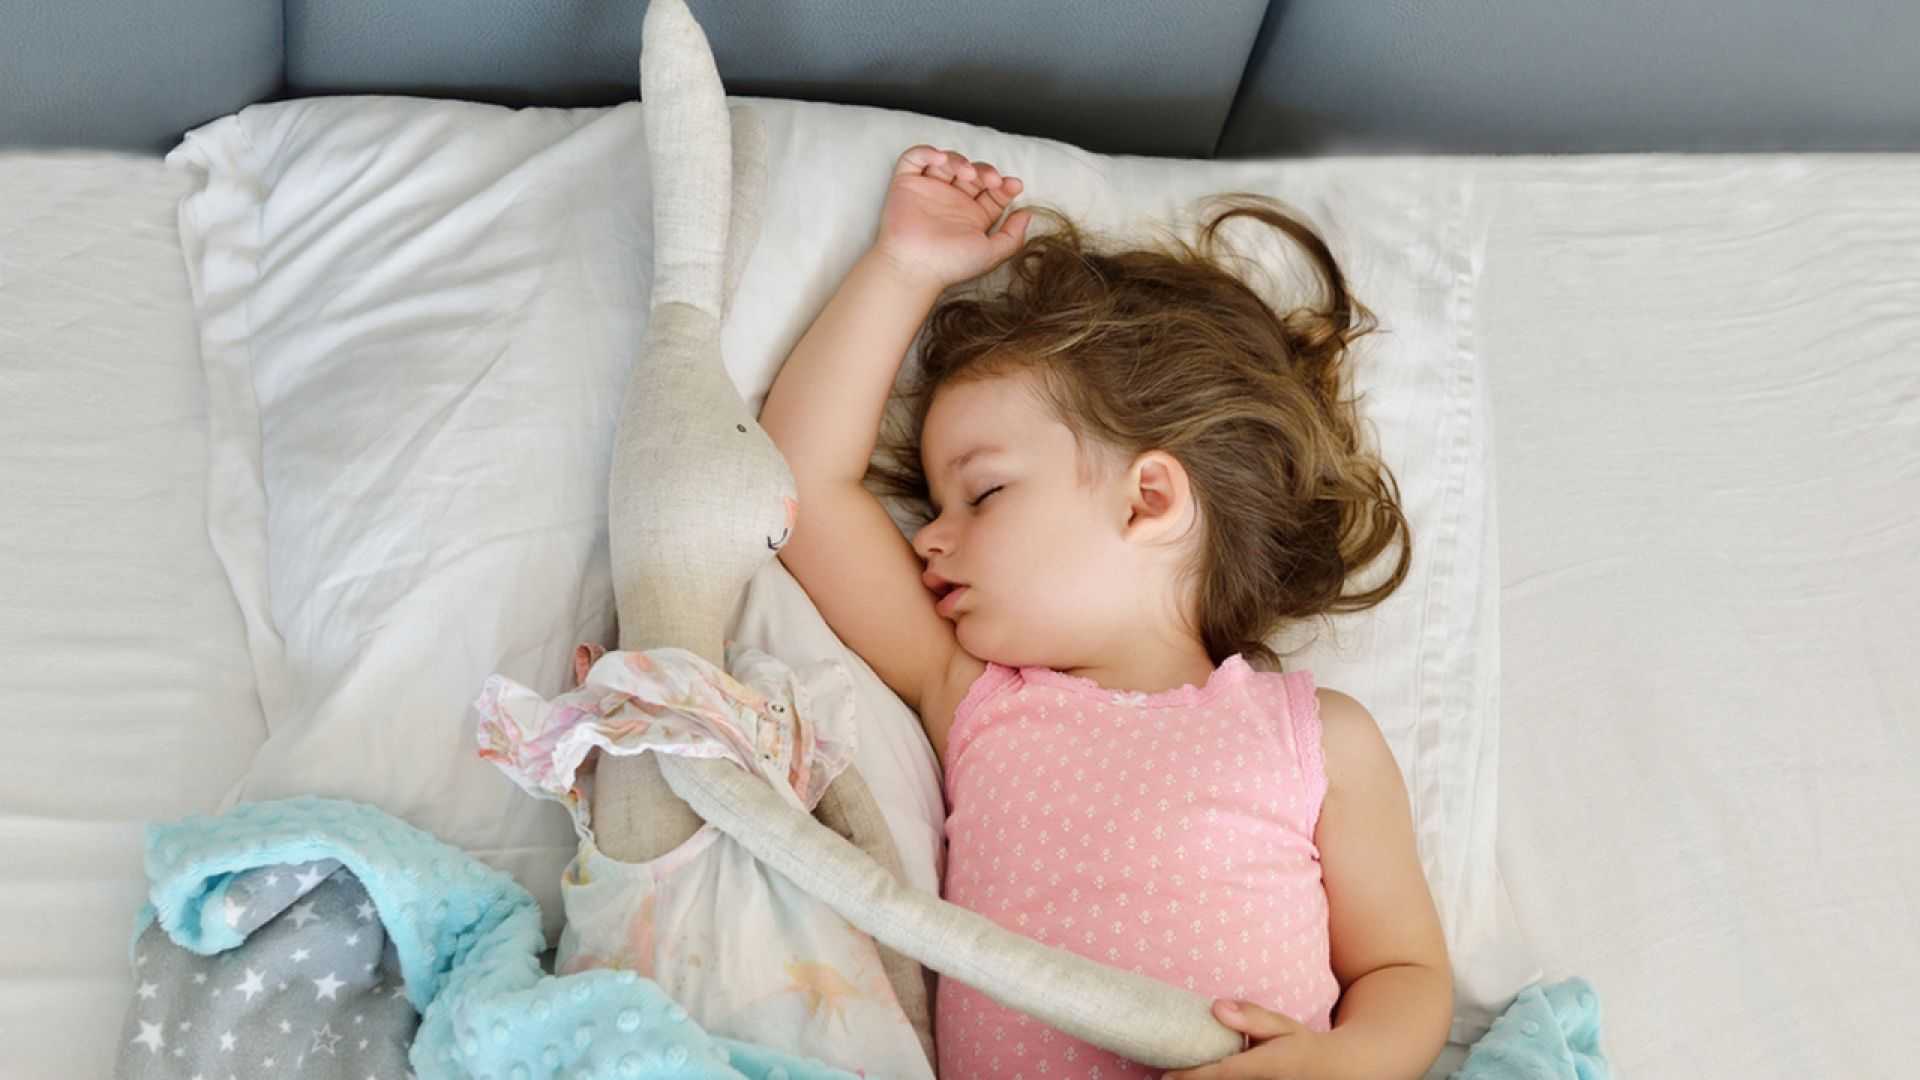 Как переложить ребенка, чтобы он не проснулся | уроки для мам